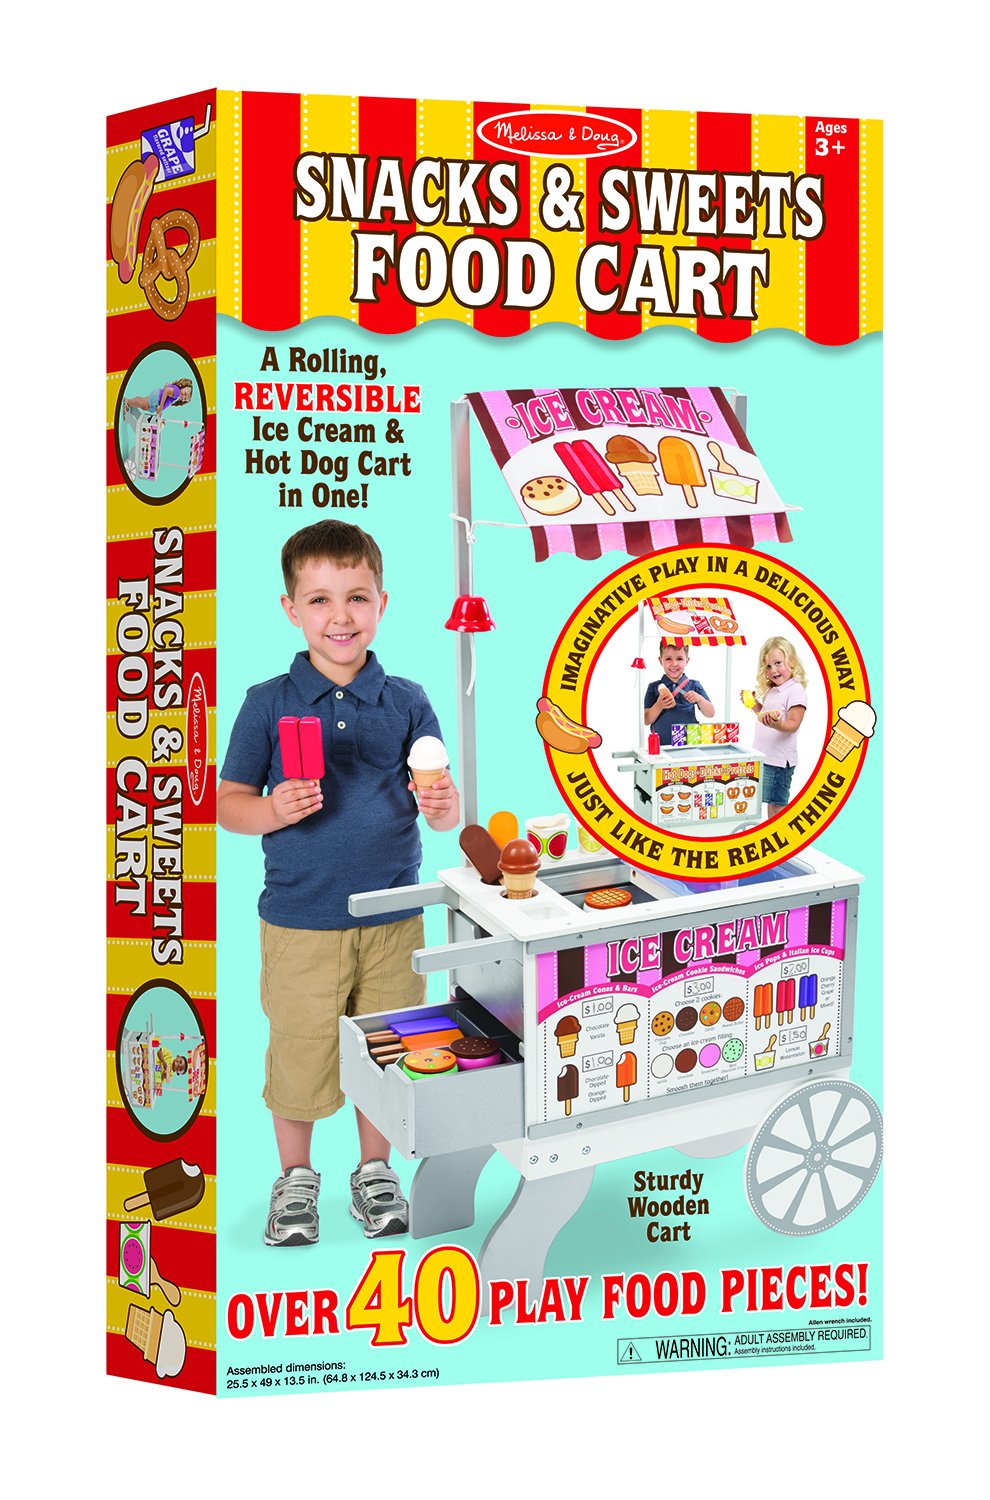 รถเข็นขายไอศกรีม และ รถเข็นขายฮอทดอก Snacks & Sweets Food Cart รุ่น 9350 ยี่ห้อ Melissa & Doug (นำเข้า USA)